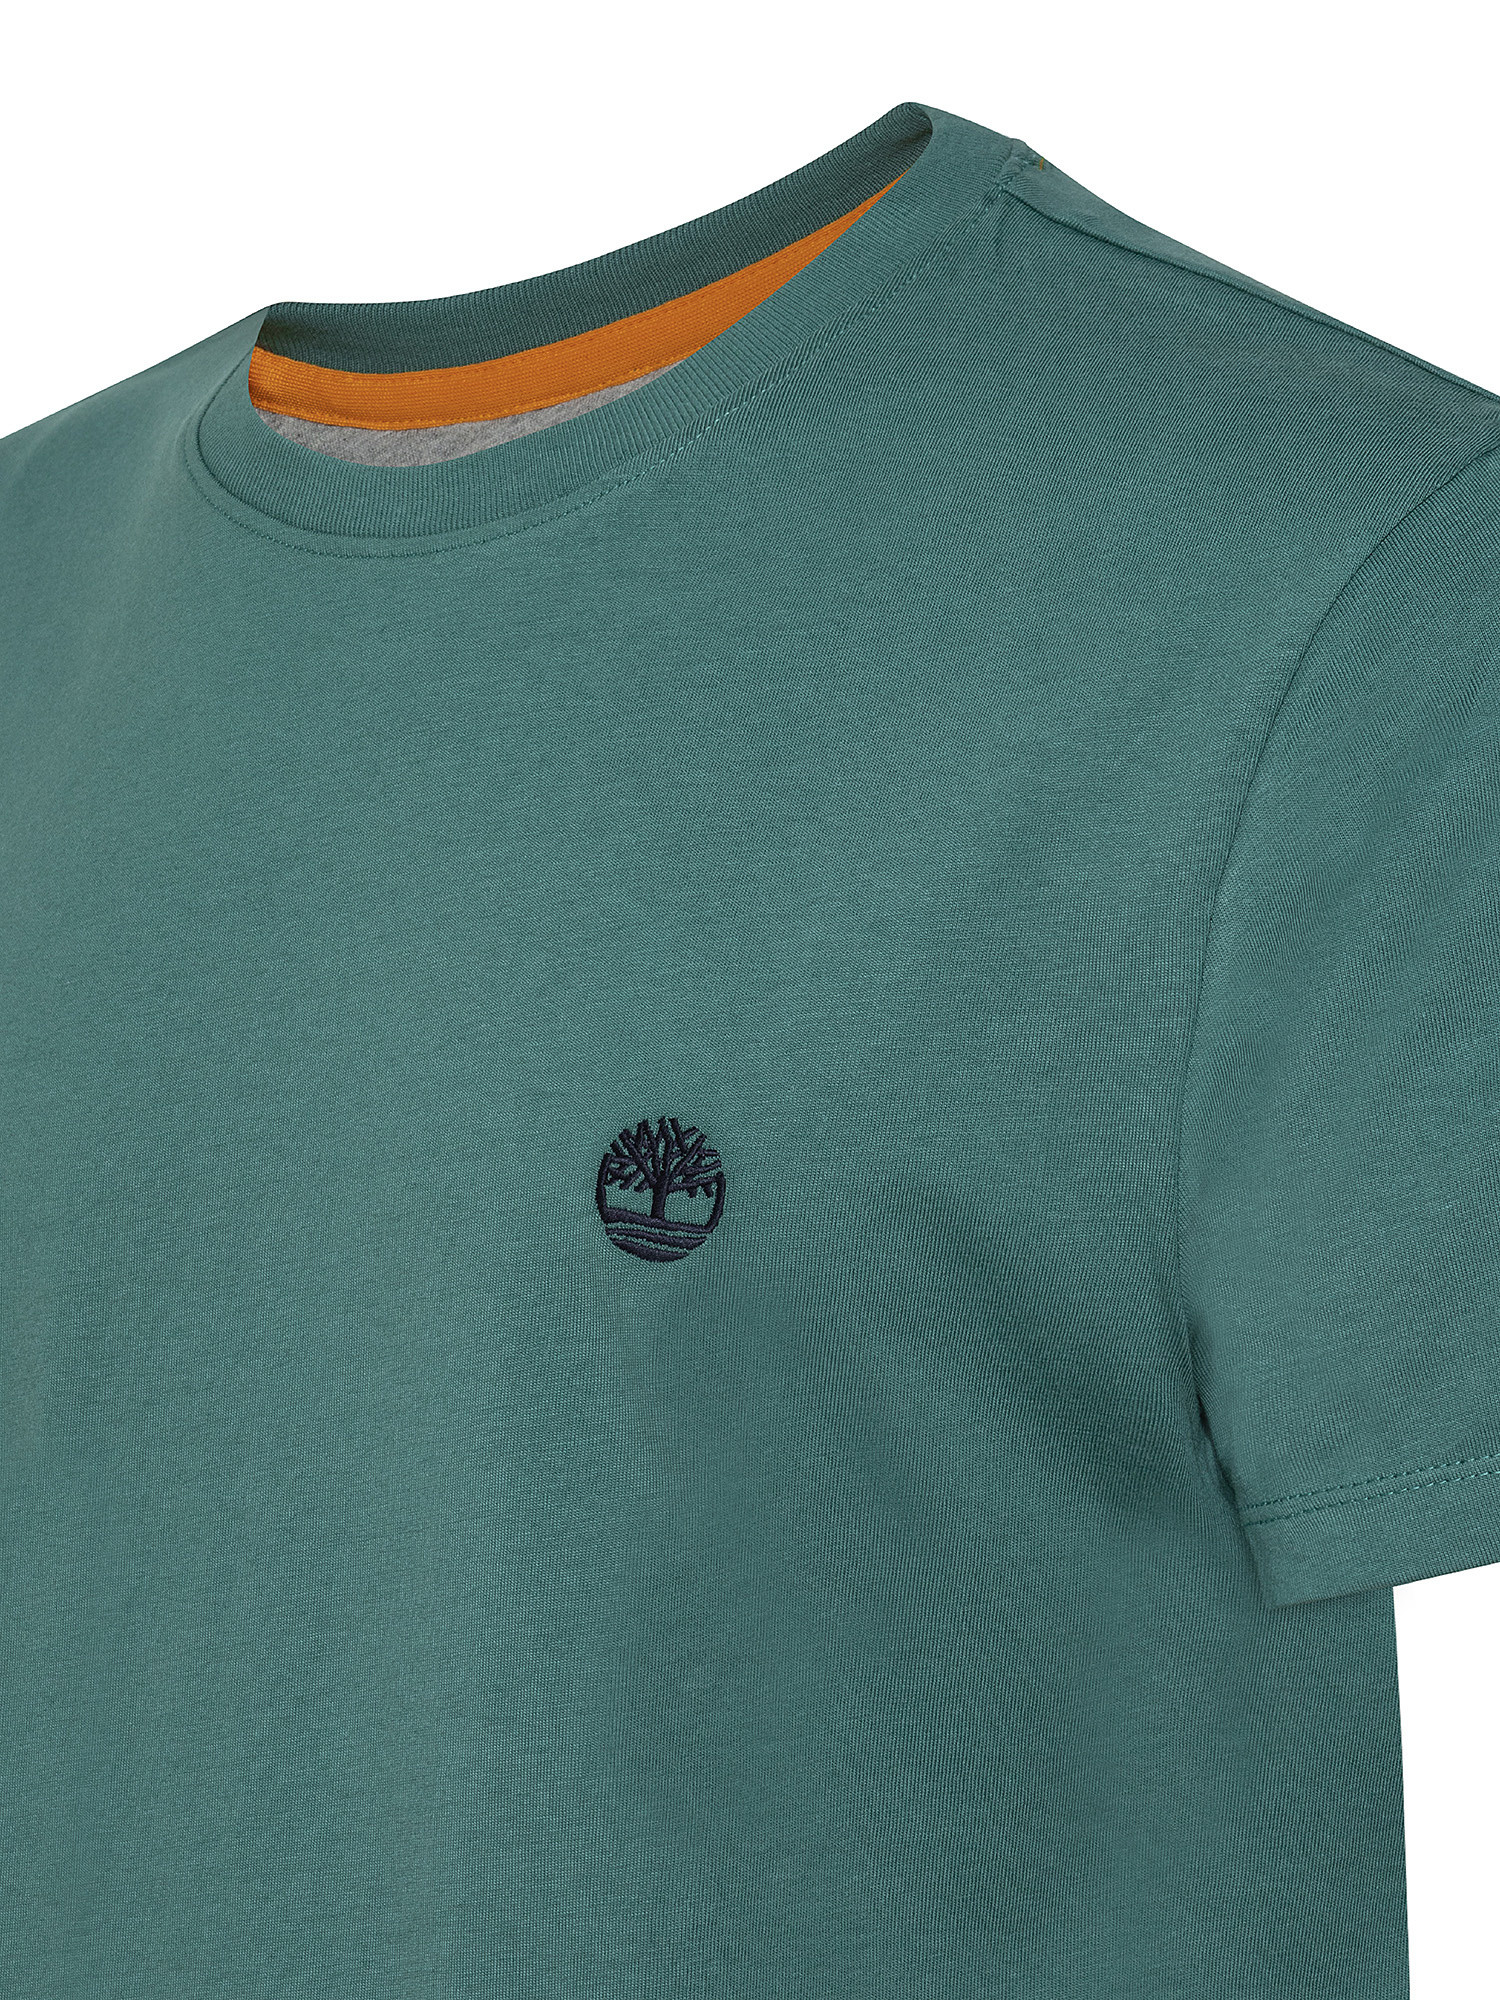 T-shirt da Uomo Dunstan River, Verde, large image number 2